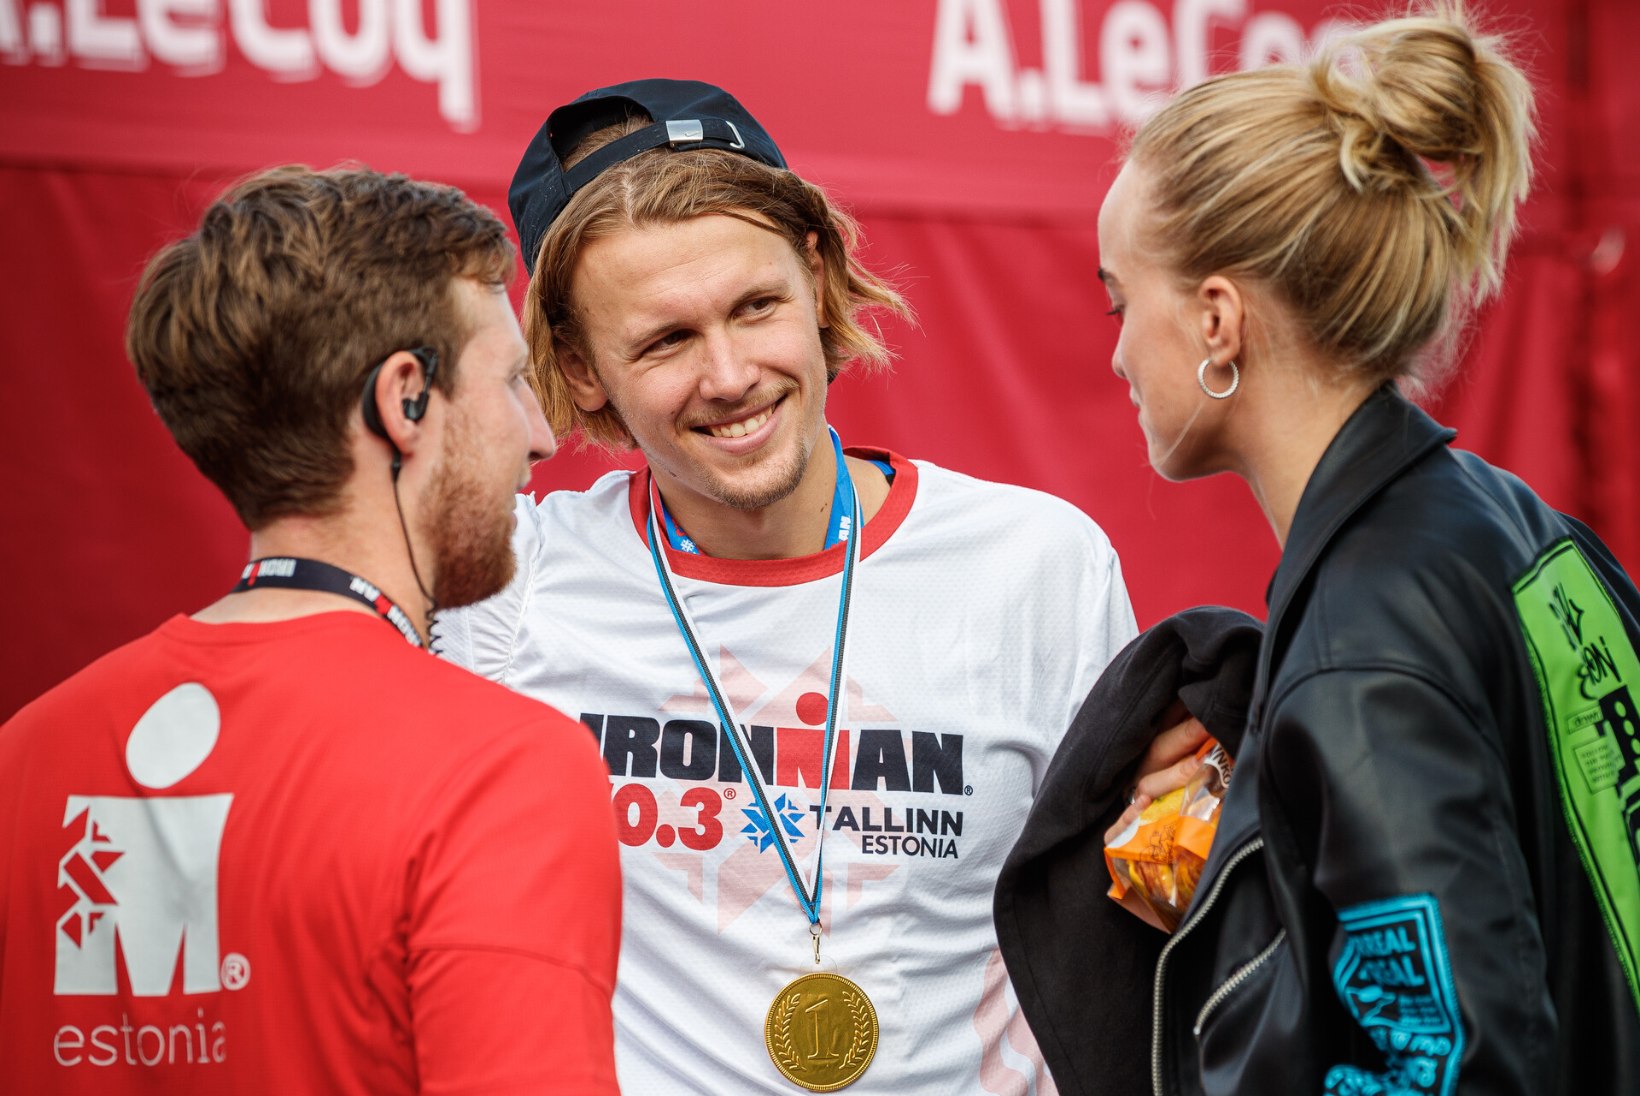 GALERII | Vaata, kes osalesid seekord Tallinna Ironmanil